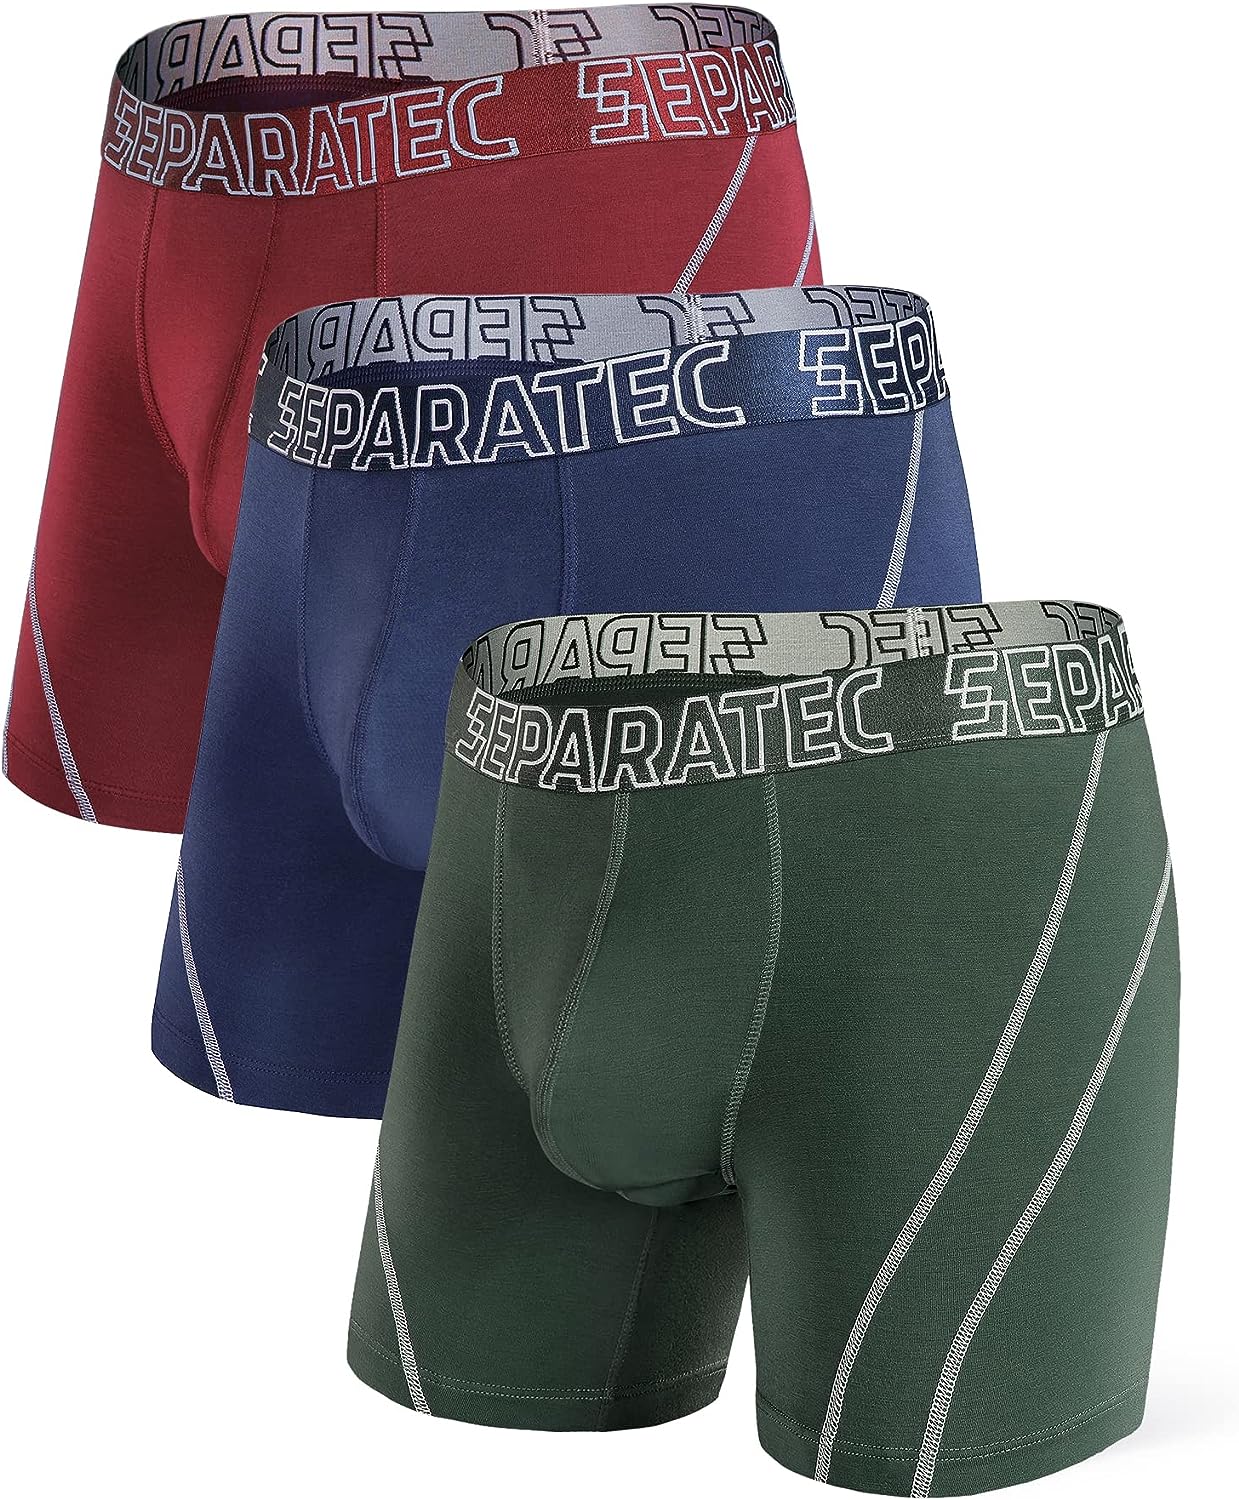 Separatec Boxers Pack Men Underwear Boxer Briefs Soft Breathable